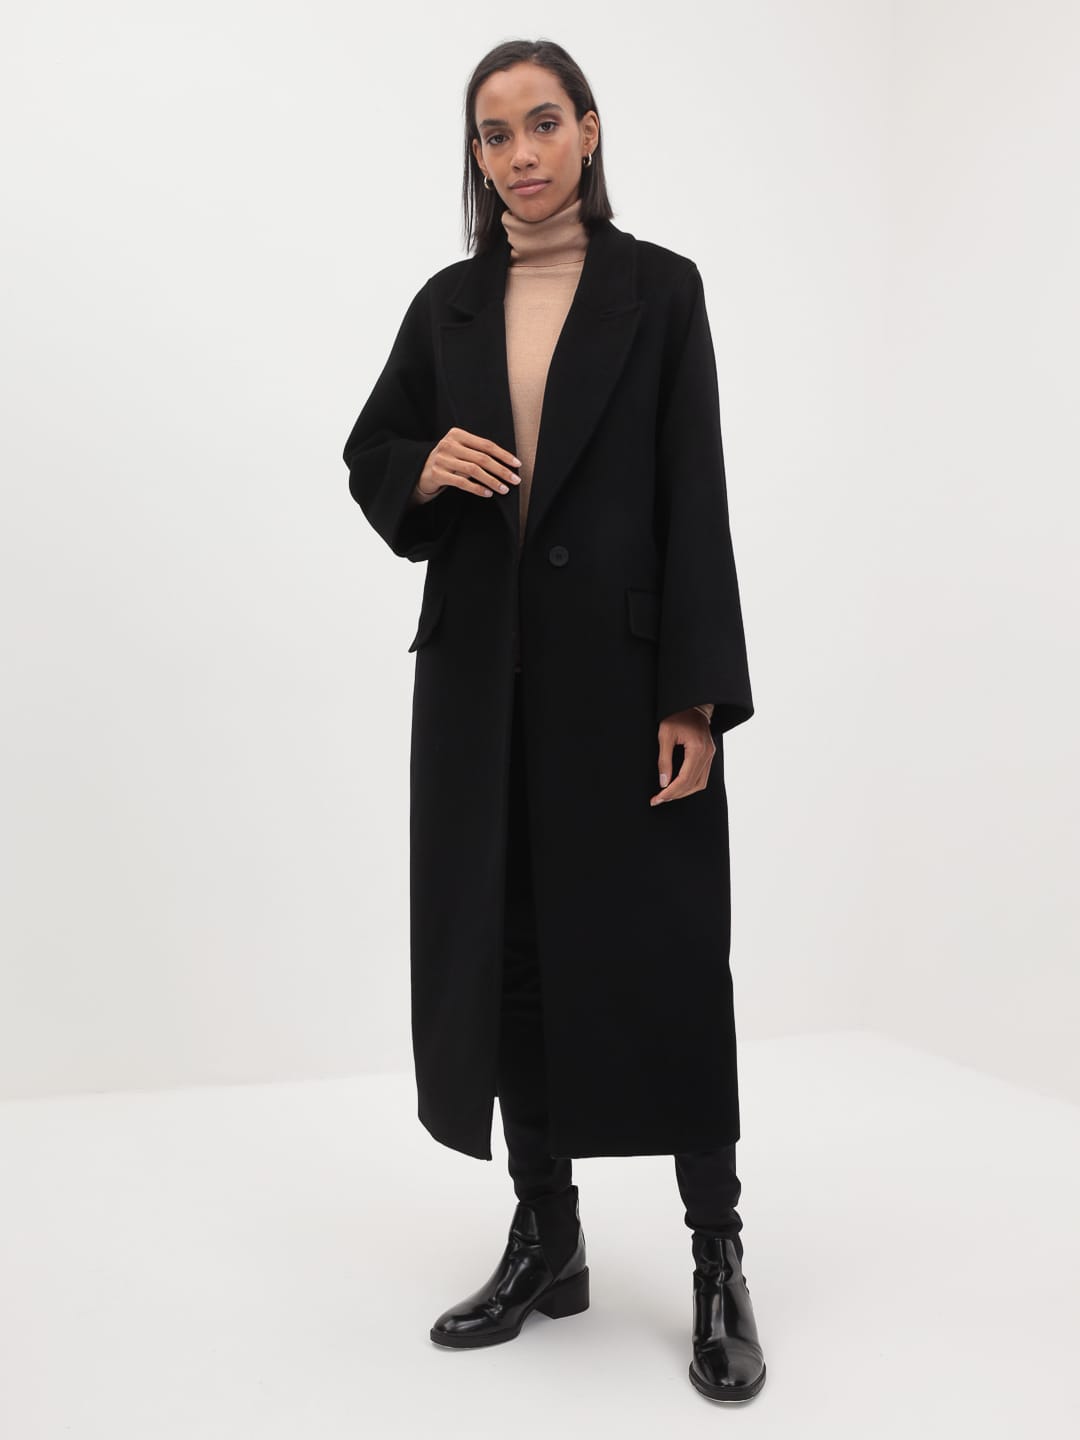 Утеплённое пальто с широкими рукавами в чёрном цвете_2